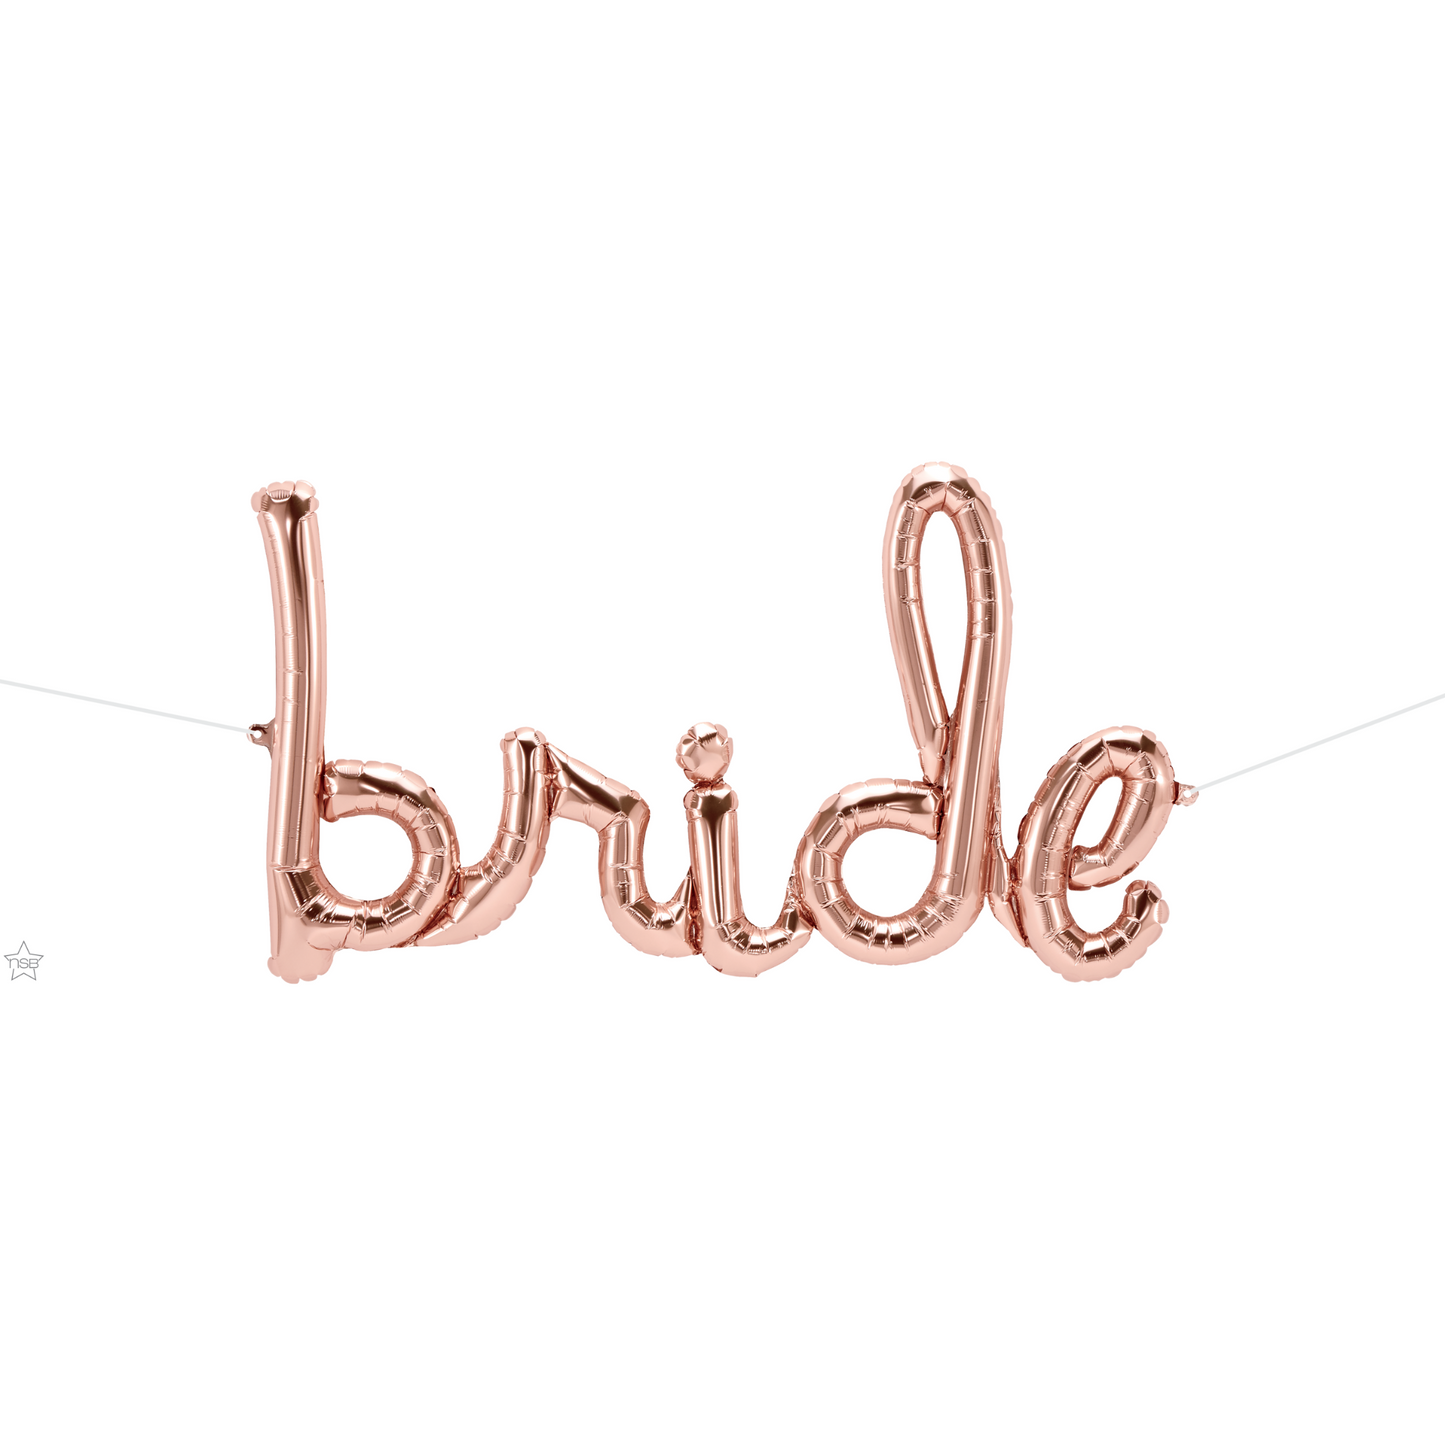 59792 - 33" SCRIPT BRIDE ROSE GOLD BALLOON